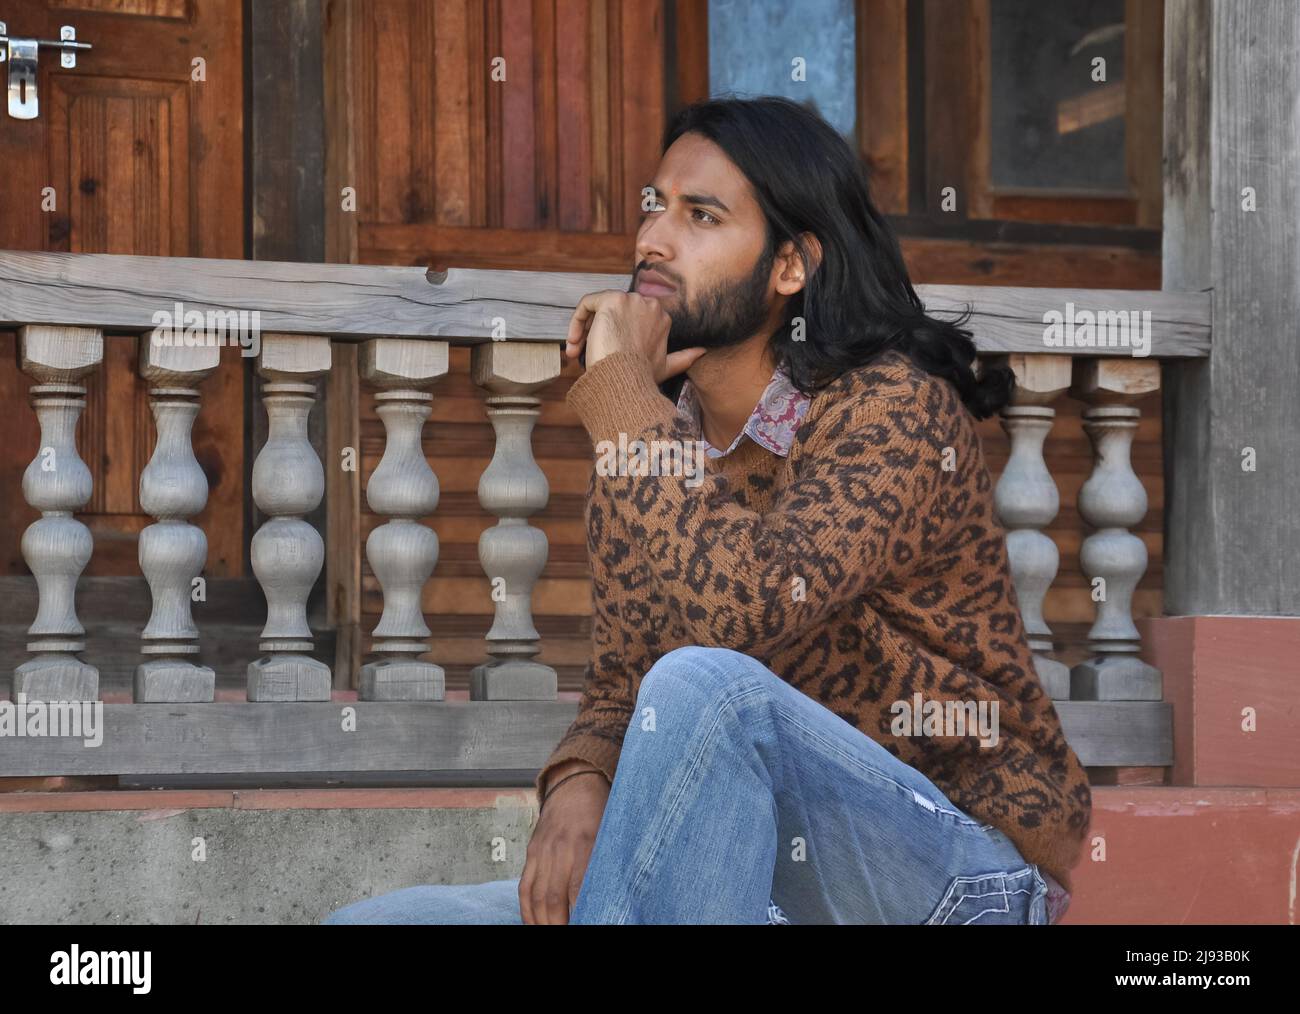 Seitenansicht eines attraktiven langhaarigen indischen jungen Mannes, der zur Seite blickt und mit der Hand auf dem Kinn auf der Tempeltreppe sitzt Stockfoto